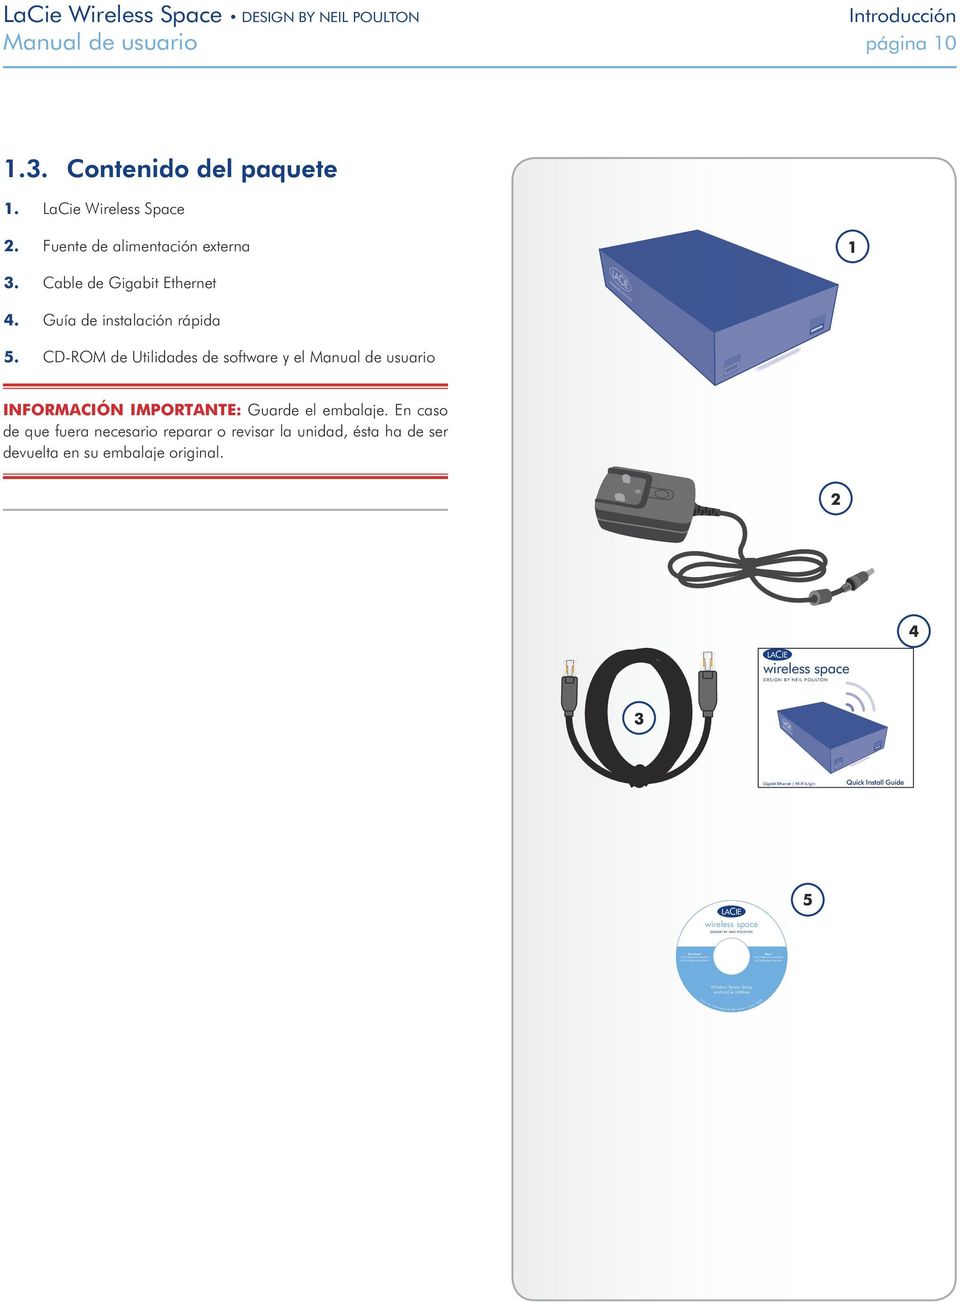 LaCie Wireless Space 2. Fuente de alimentación externa 3. Cable de Gigabit Ethernet 4. Guía de instalación rápida 5.